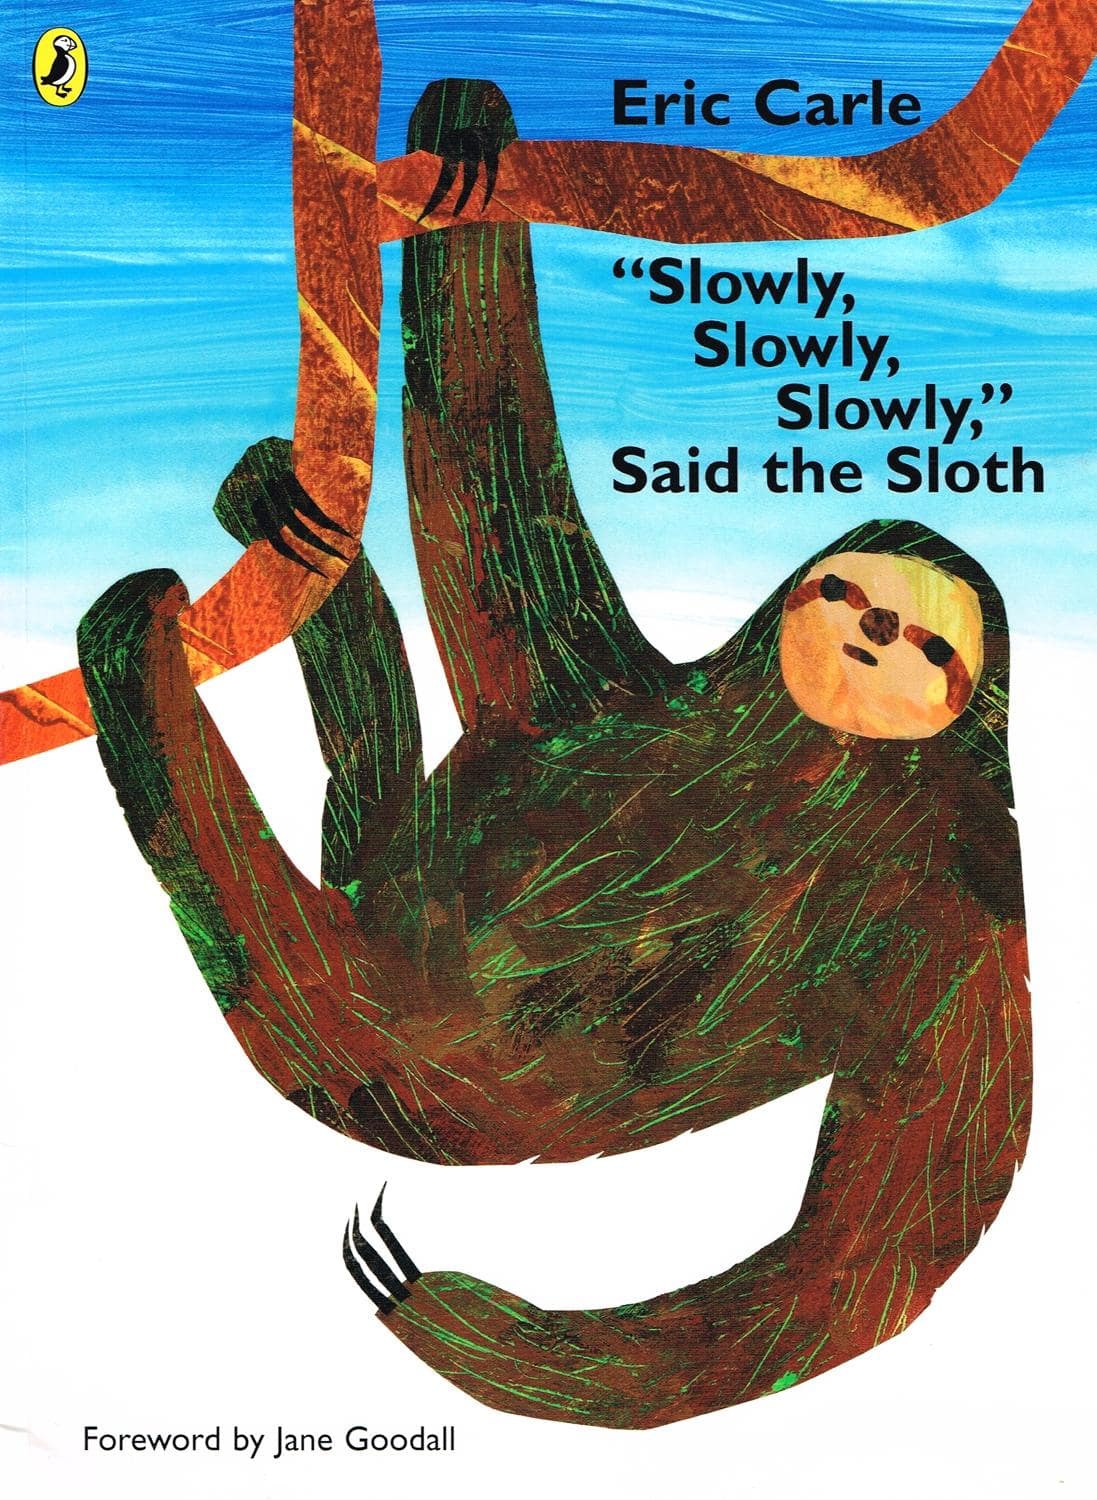 IMG : Slowly Slowly Slowly said the sloth